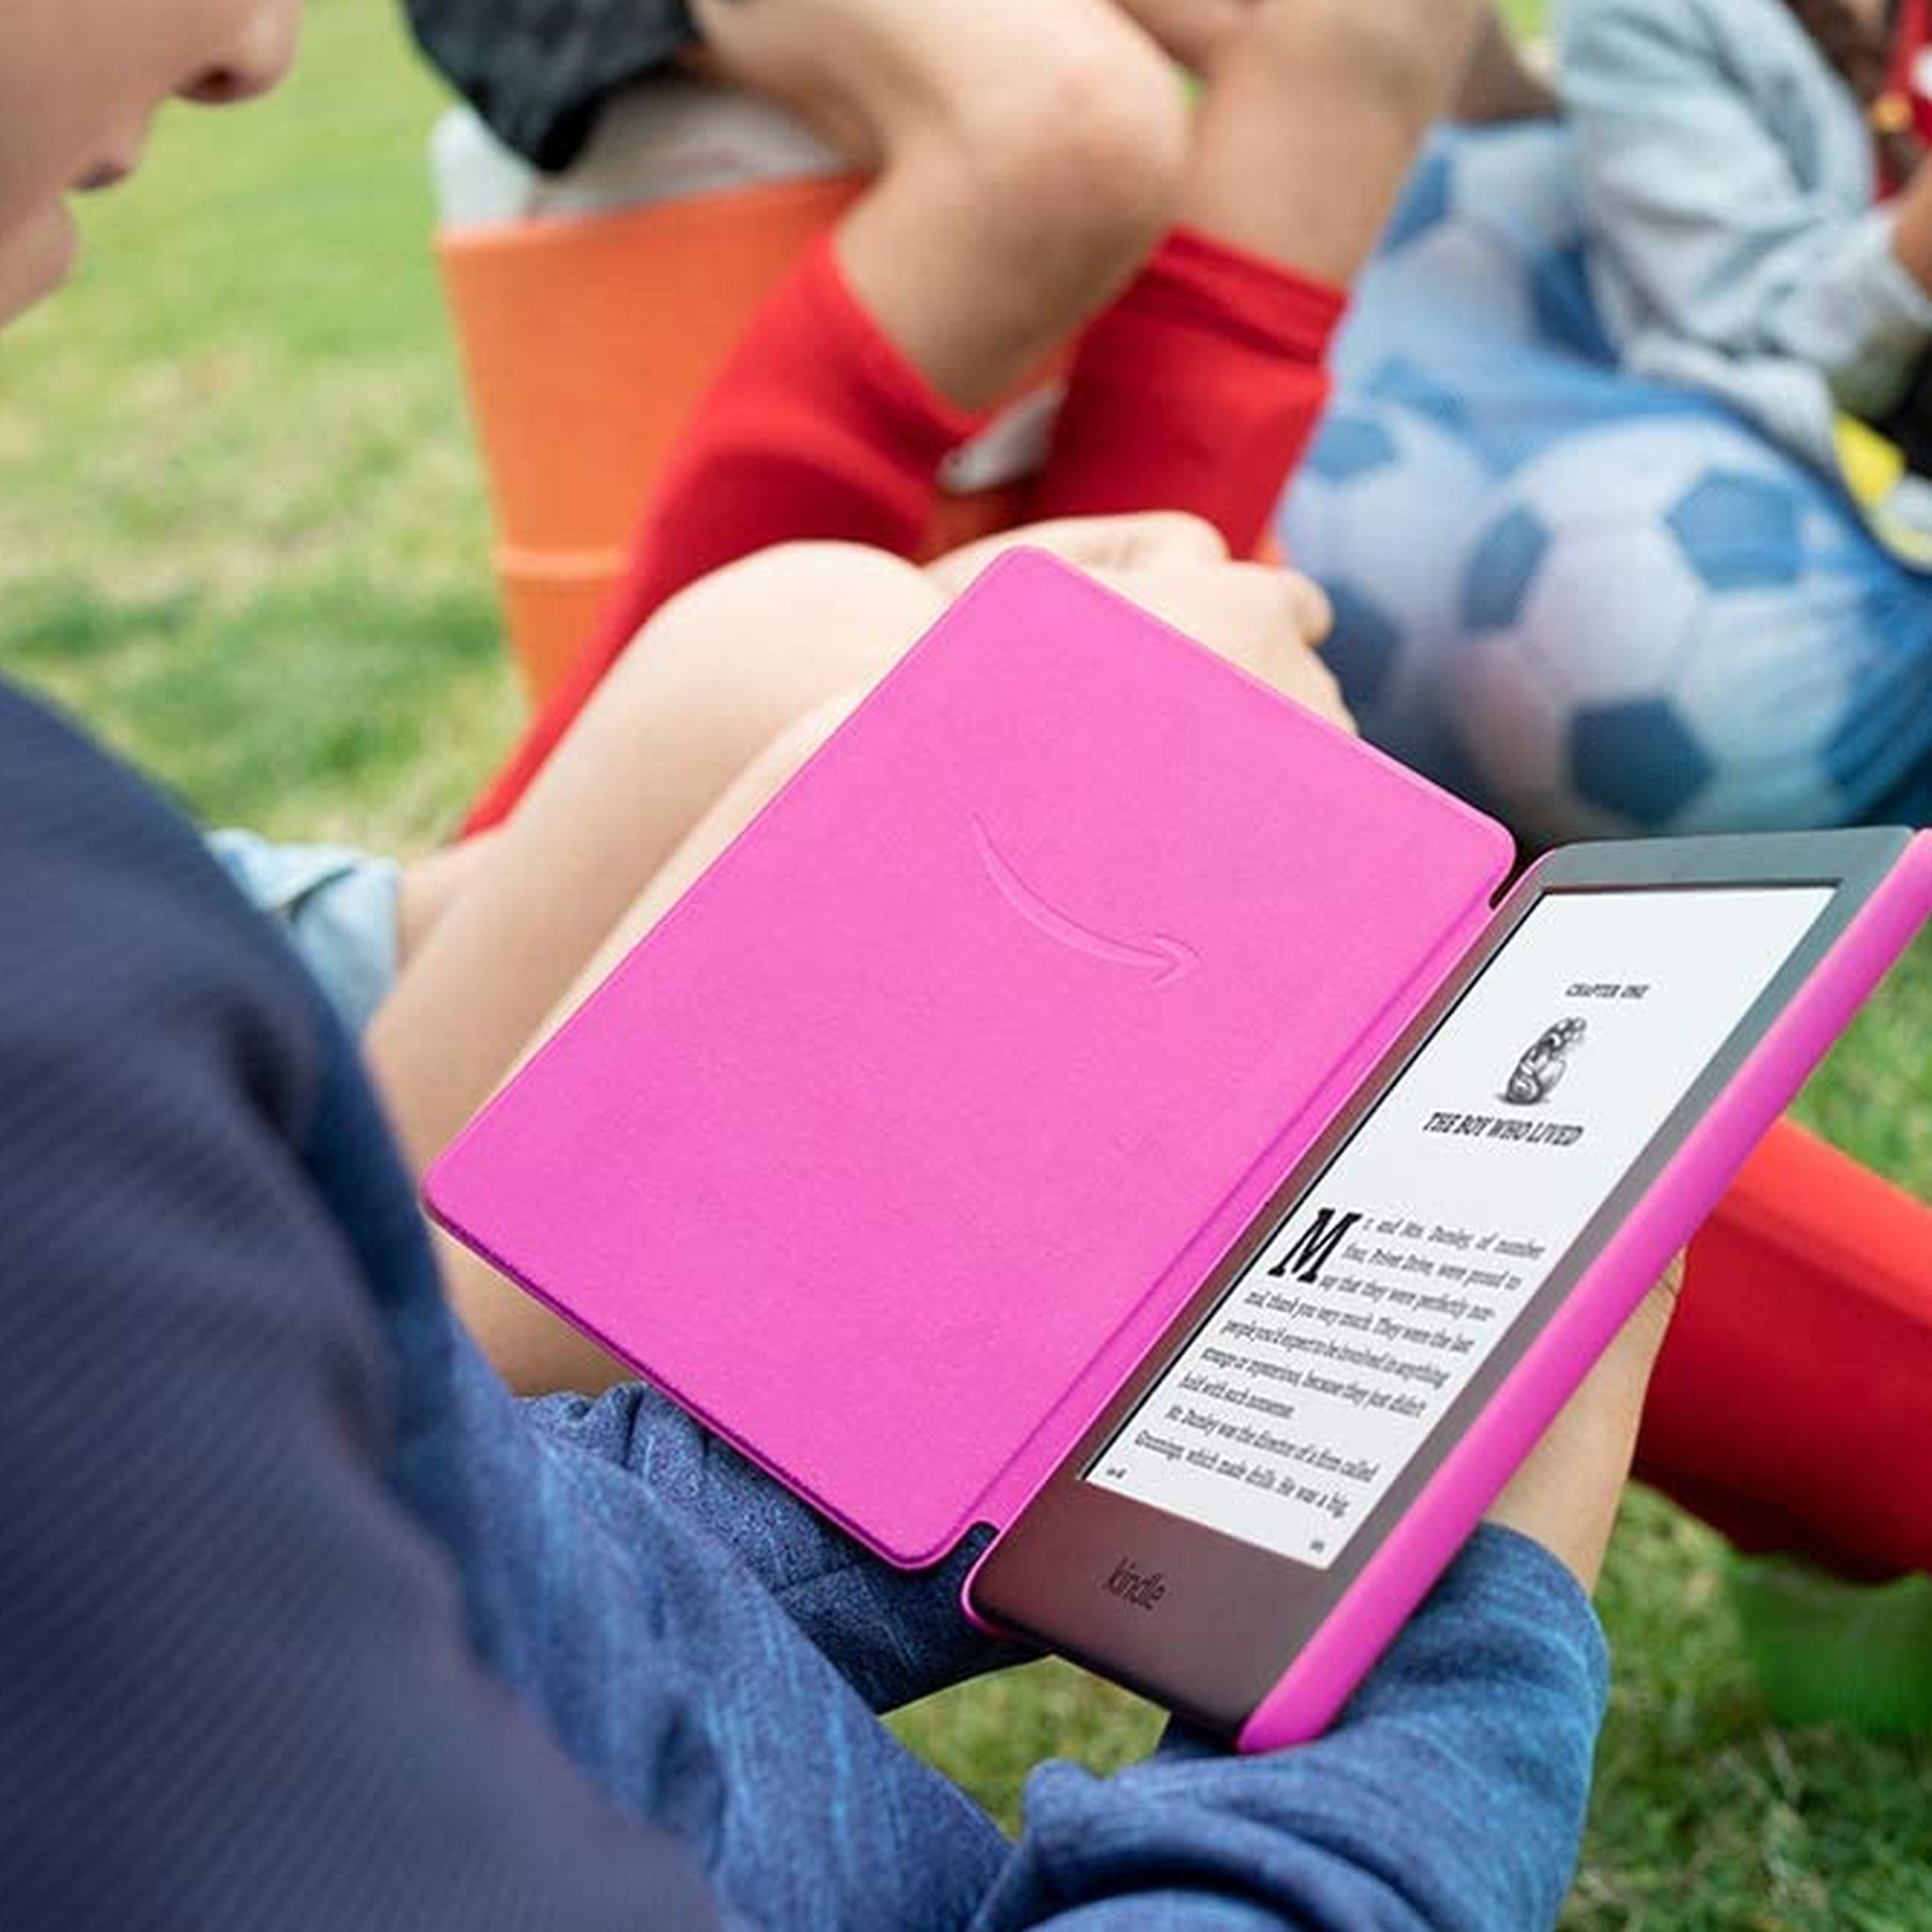 Un niño sostiene y lee un Kindle rosa mientras está sentado en el césped.